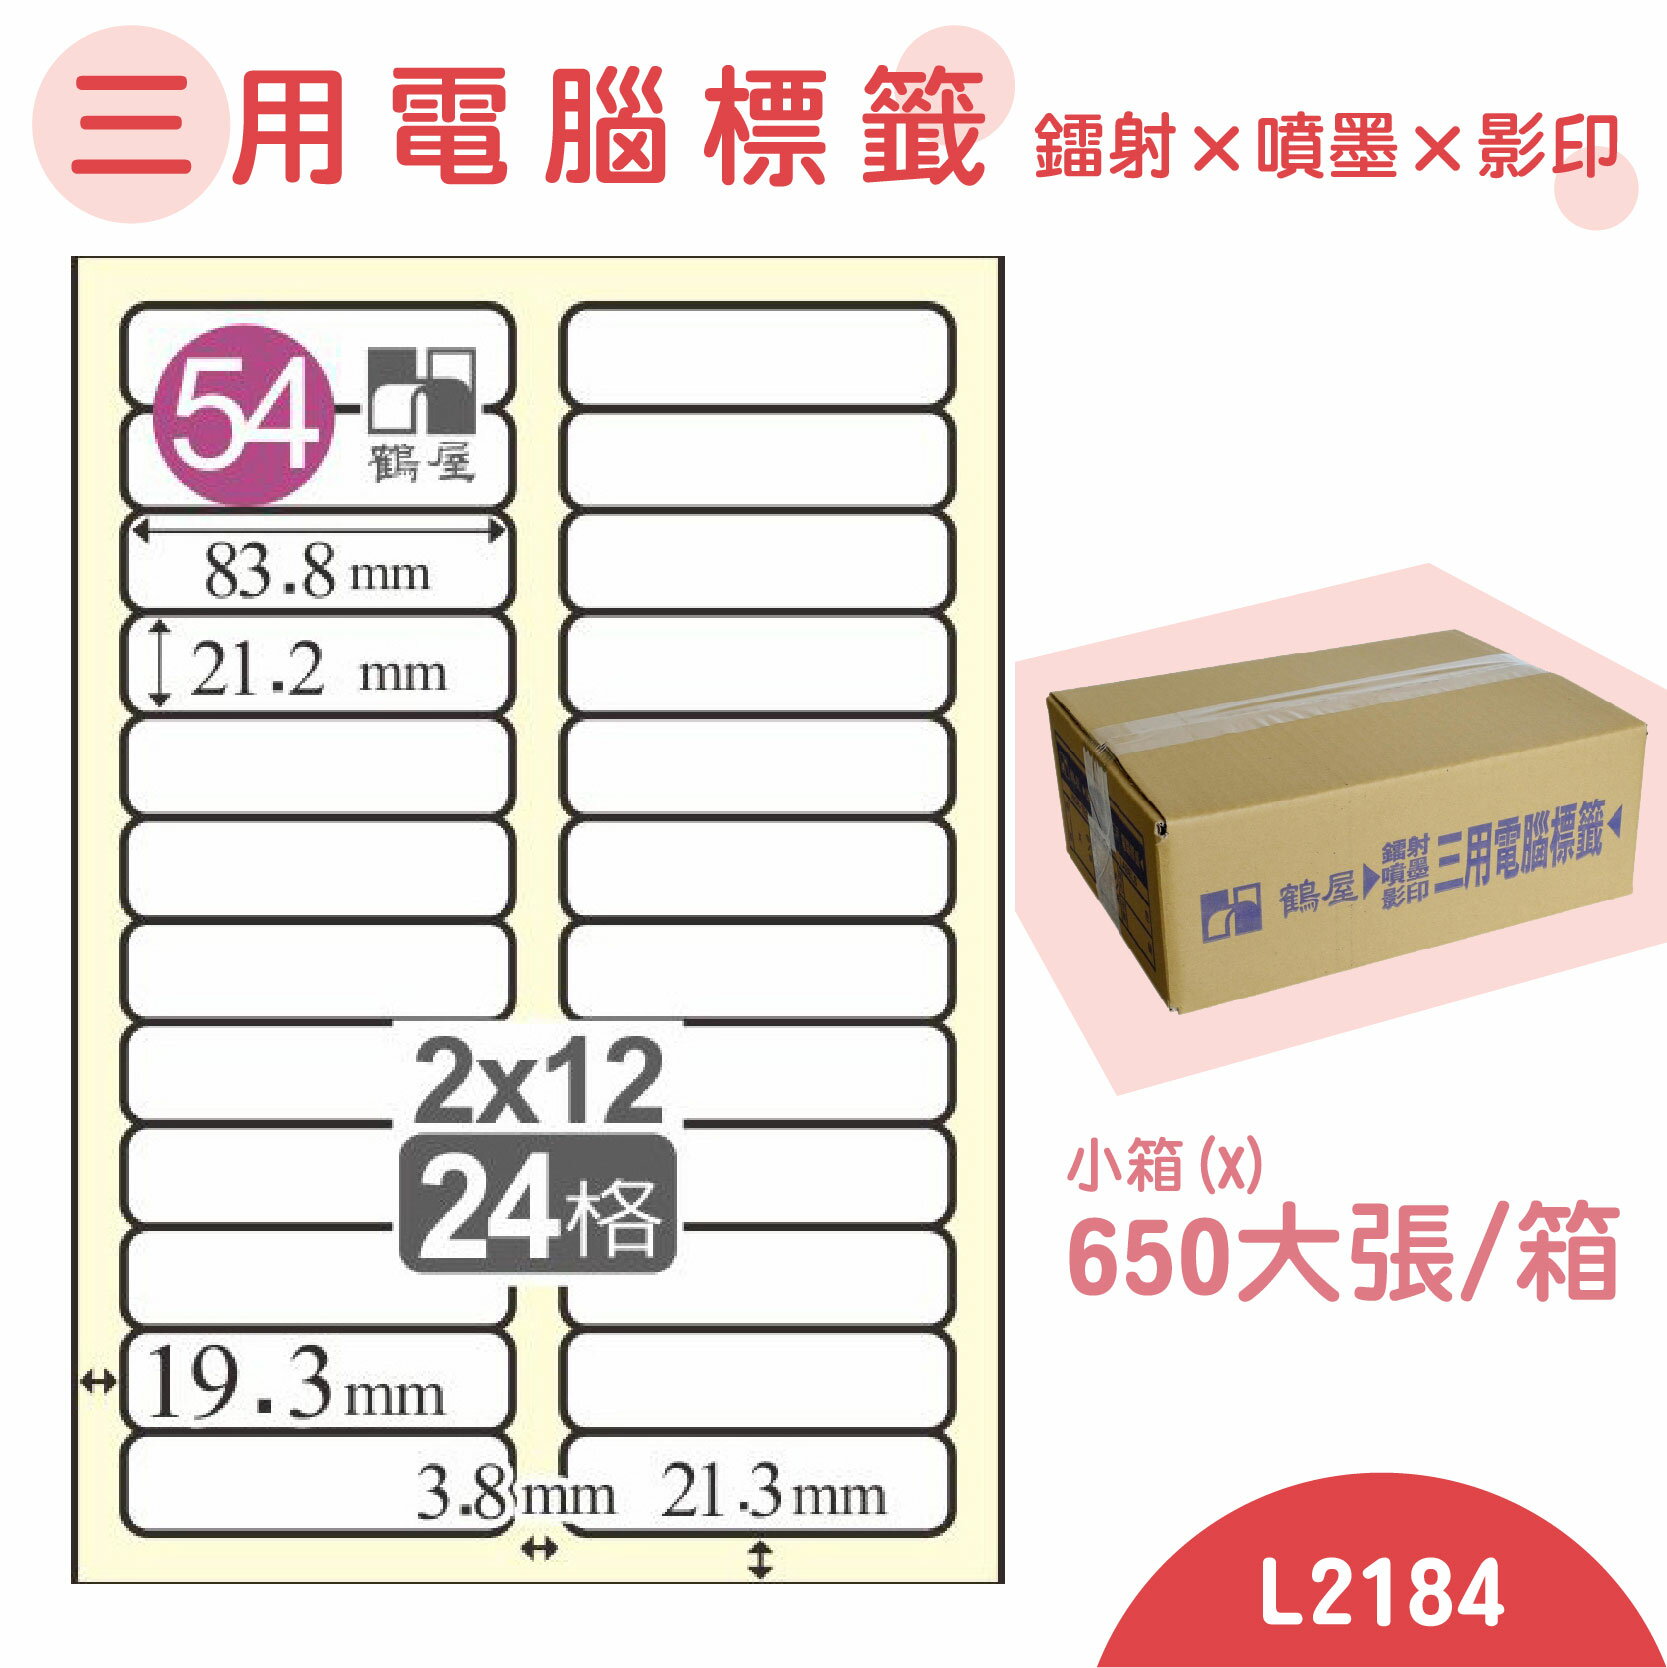 【品質第一】鶴屋 電腦標籤紙 白 L2184 24格 650大張/小箱 影印 雷射 噴墨 三用 標籤 出貨 貼紙